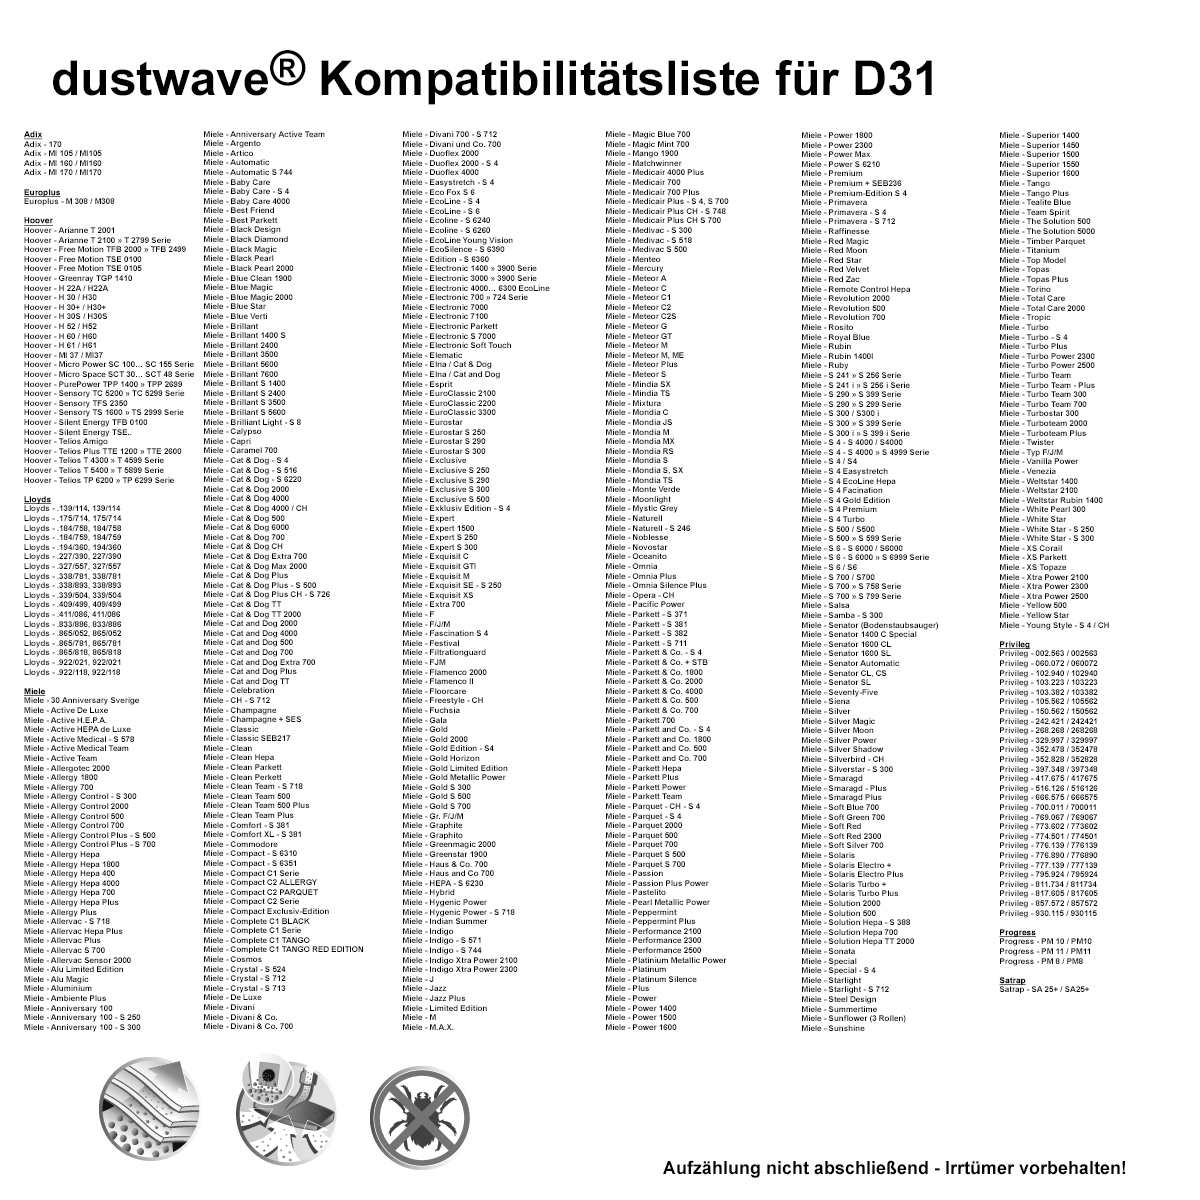 Dustwave® 10 Staubsaugerbeutel für Hoover TE81CARE 011 - hocheffizient, mehrlagiges Mikrovlies mit Hygieneverschluss - Made in Germany